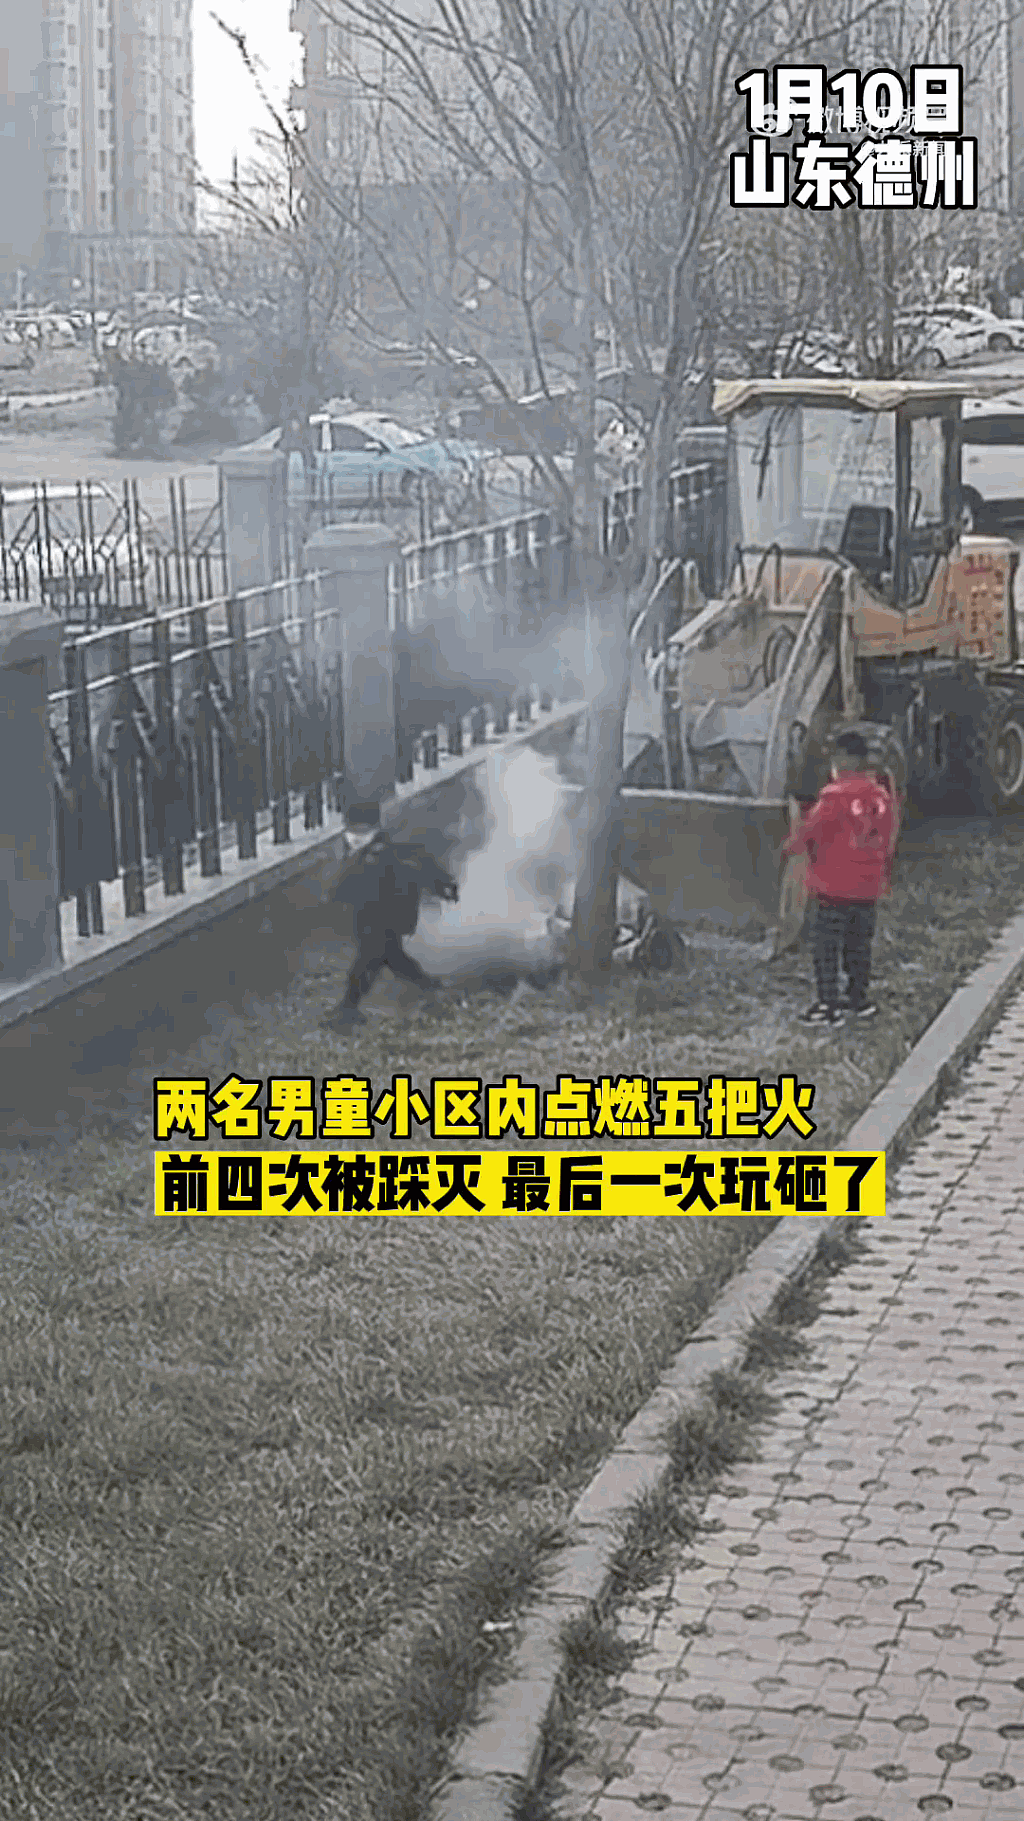 两名小童在社区一辆铲车后玩火，其中一名更在燃烧中的杂草上尝试将火踩熄。